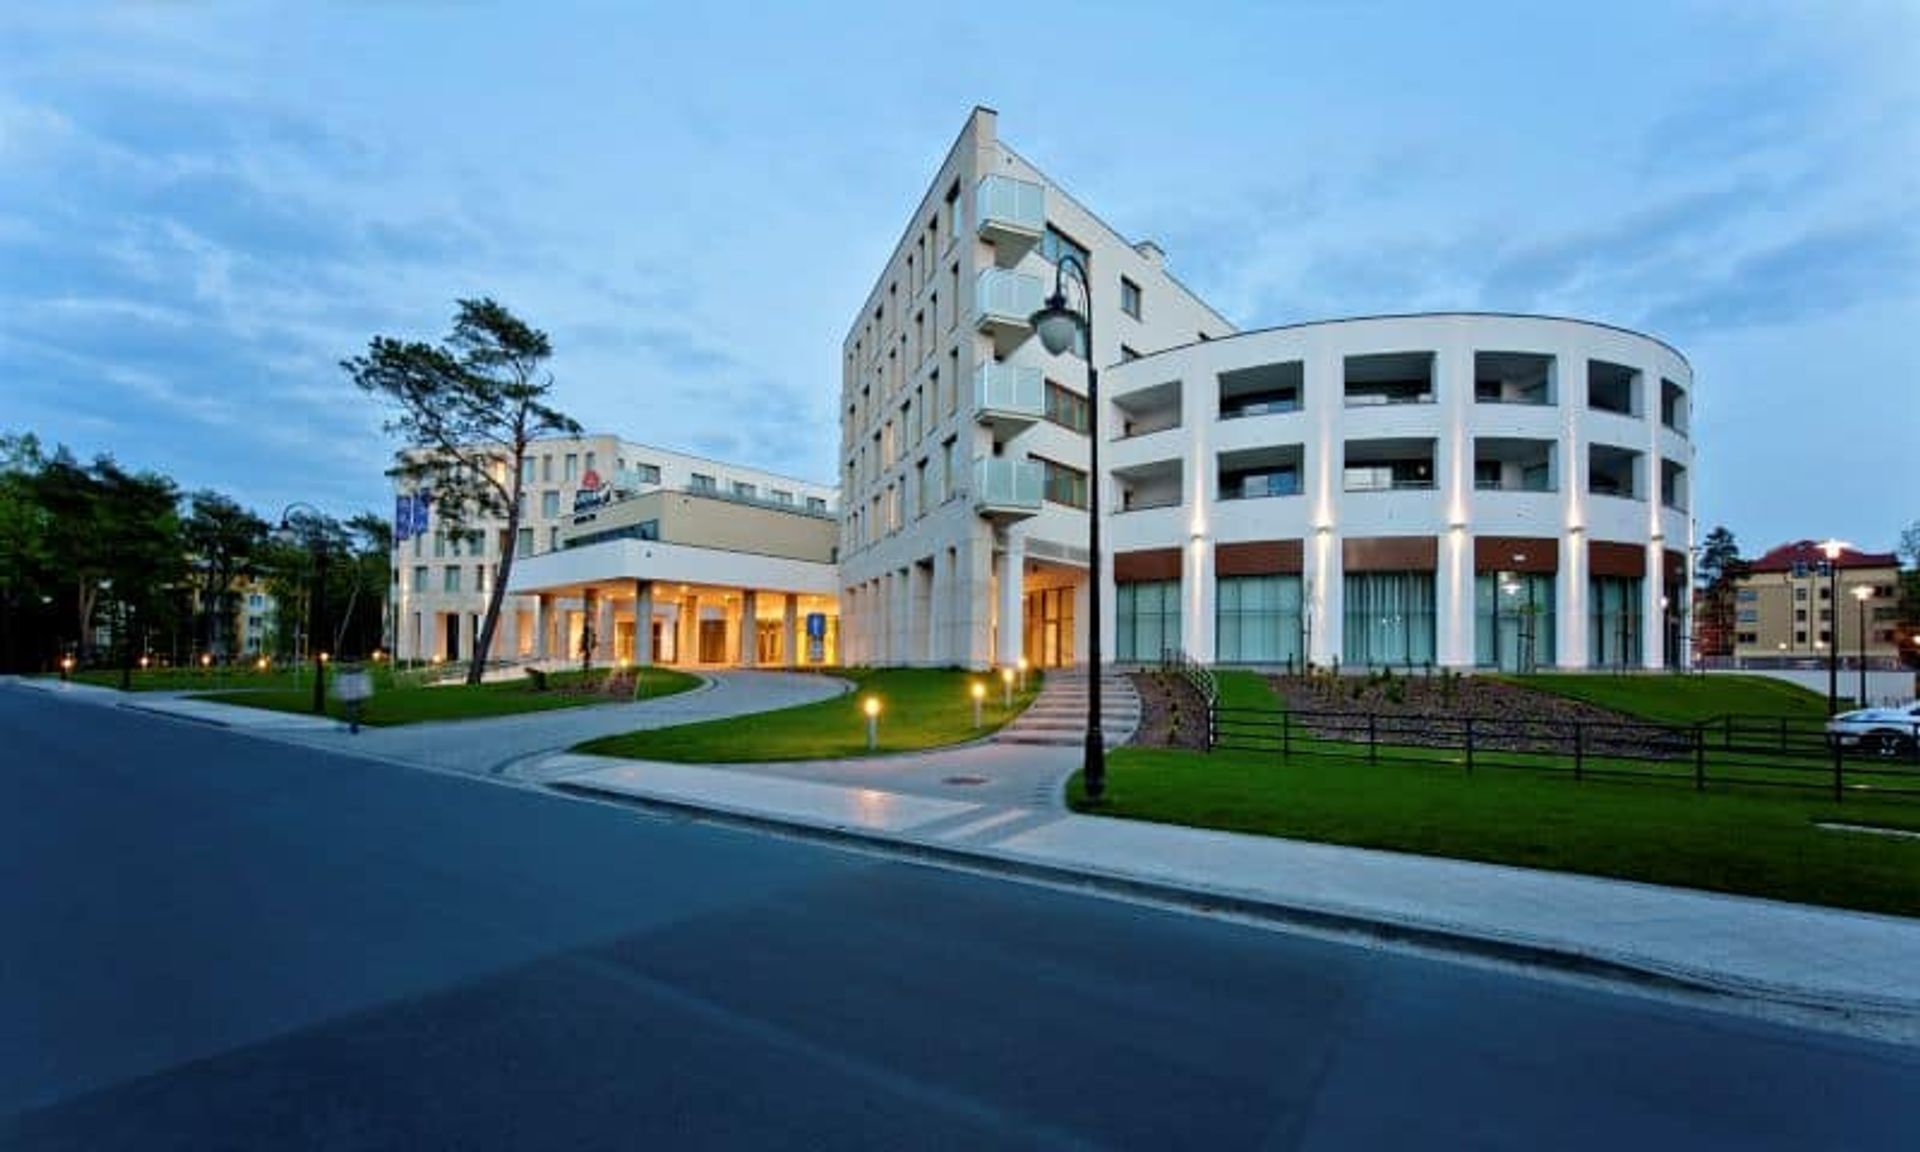 Interferie Hotel Medical Spa w Świnoujściu zmienia szyld na należący do Grupy Accor brand premium Mövenpick